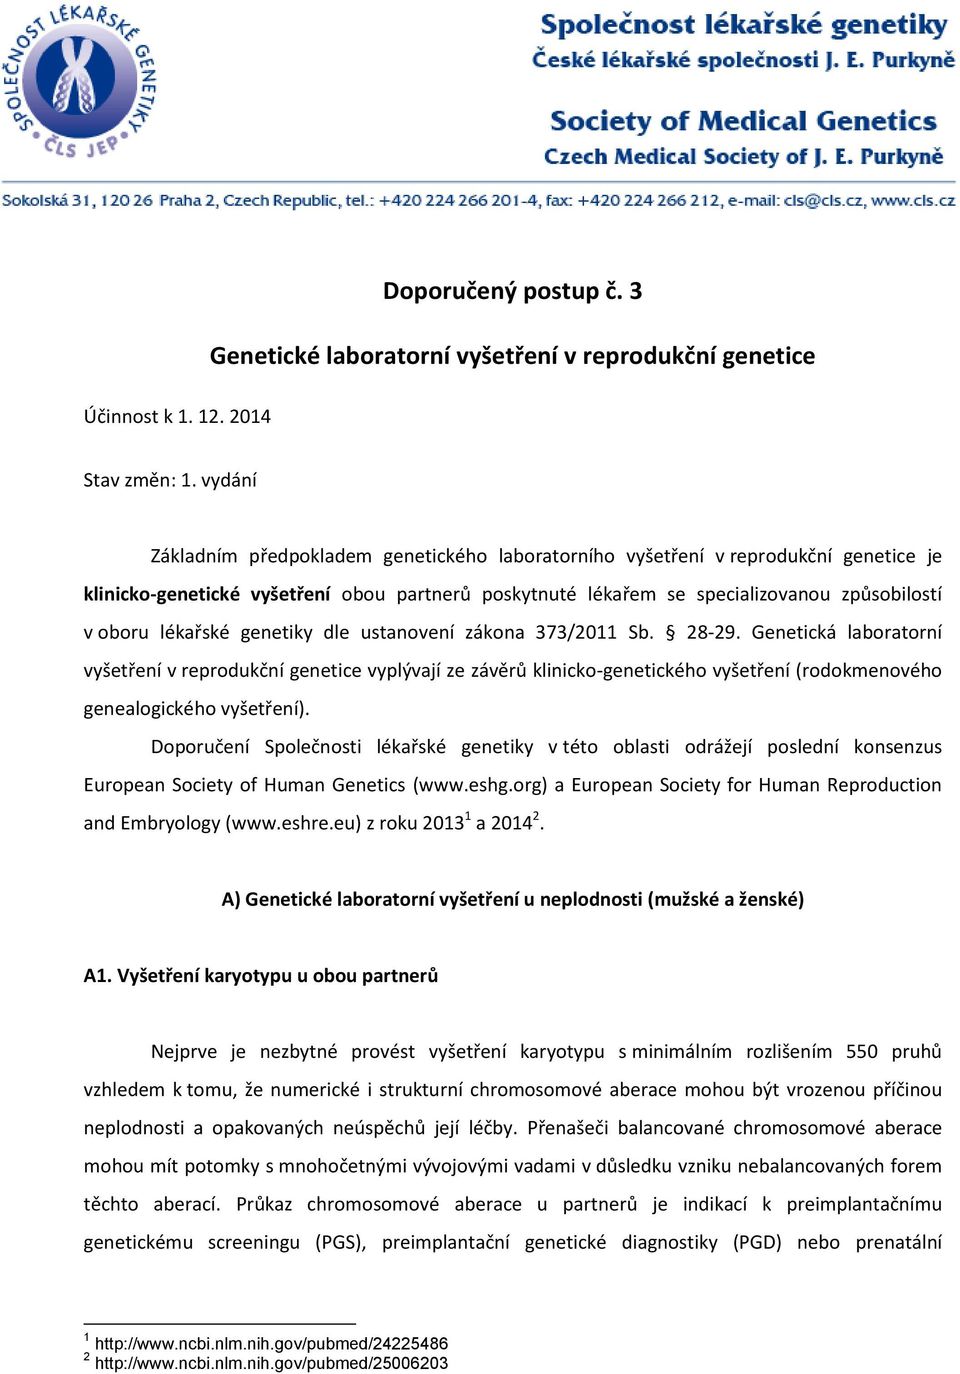 lékařské genetiky dle ustanovení zákona 373/2011 Sb. 28-29.